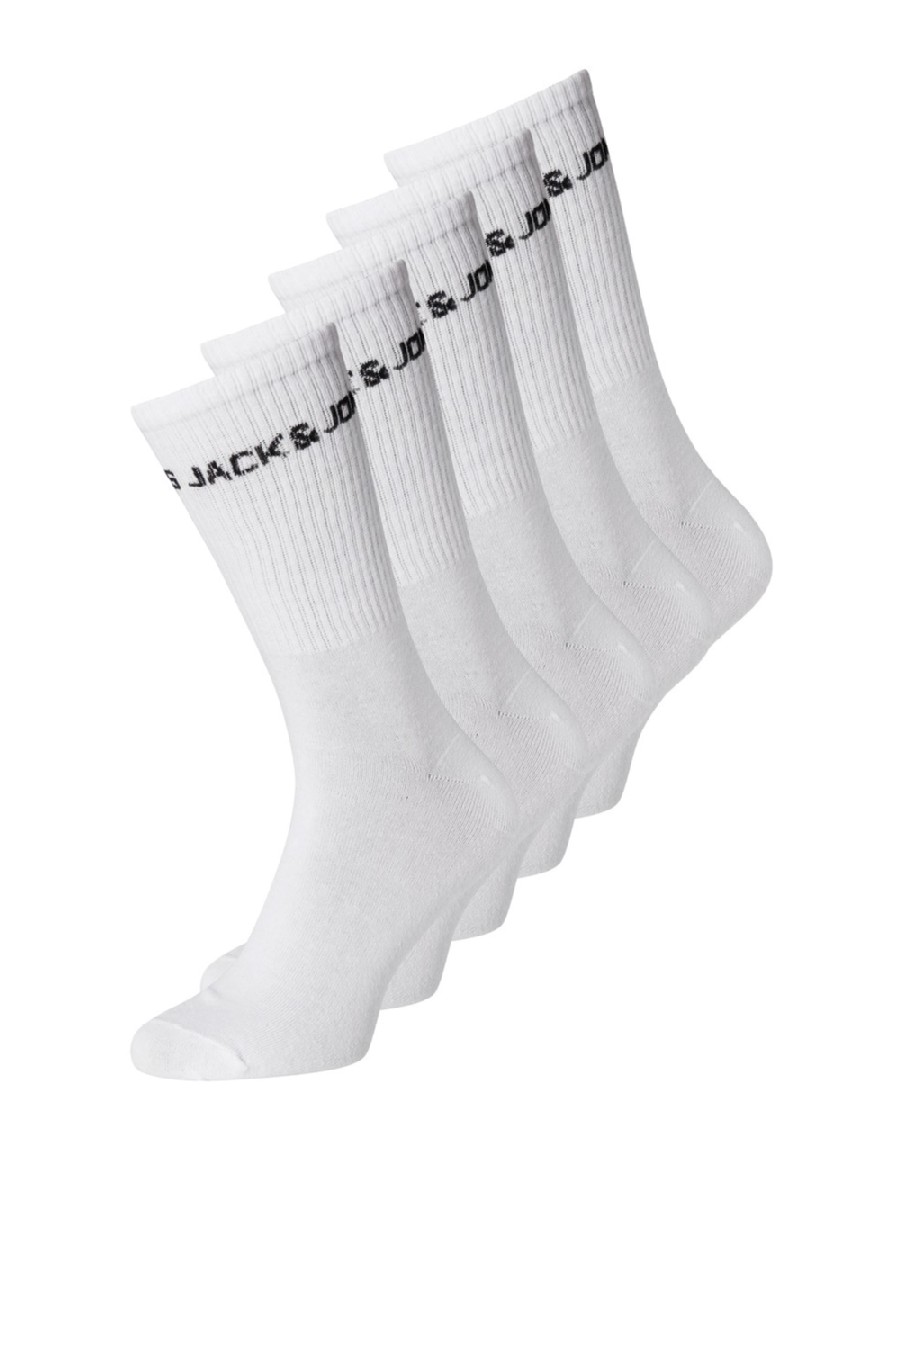 Socks JACK & JONES 12179475-White